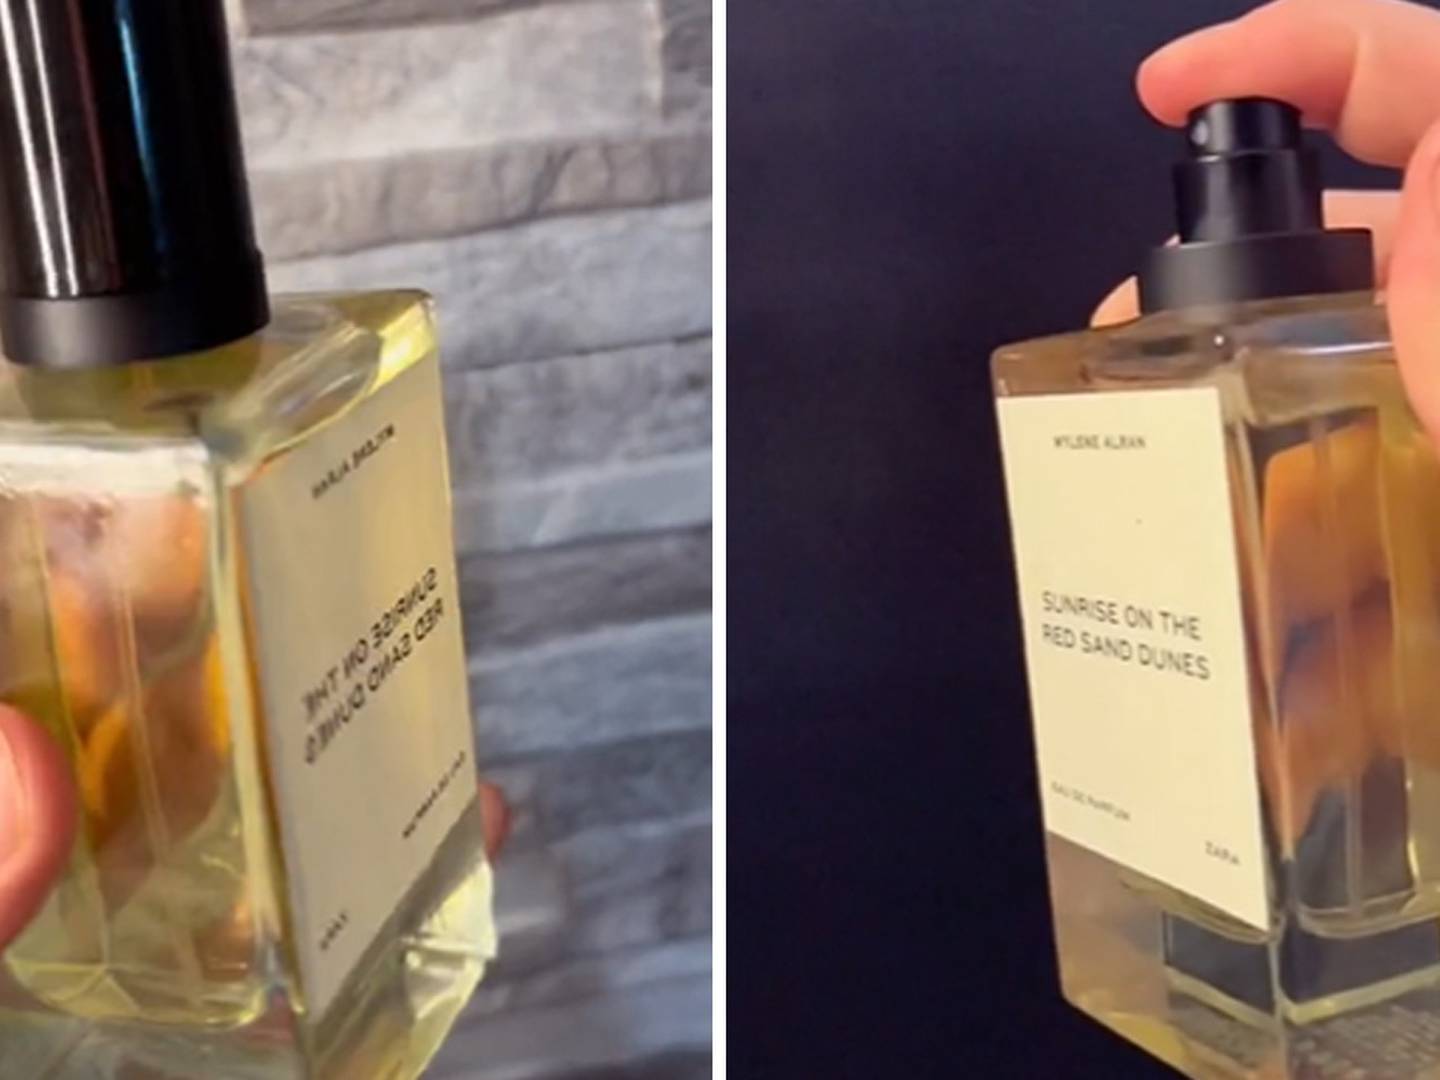 Mejores Louis Vuitton Perfumes para hombre Y mujer en Chile